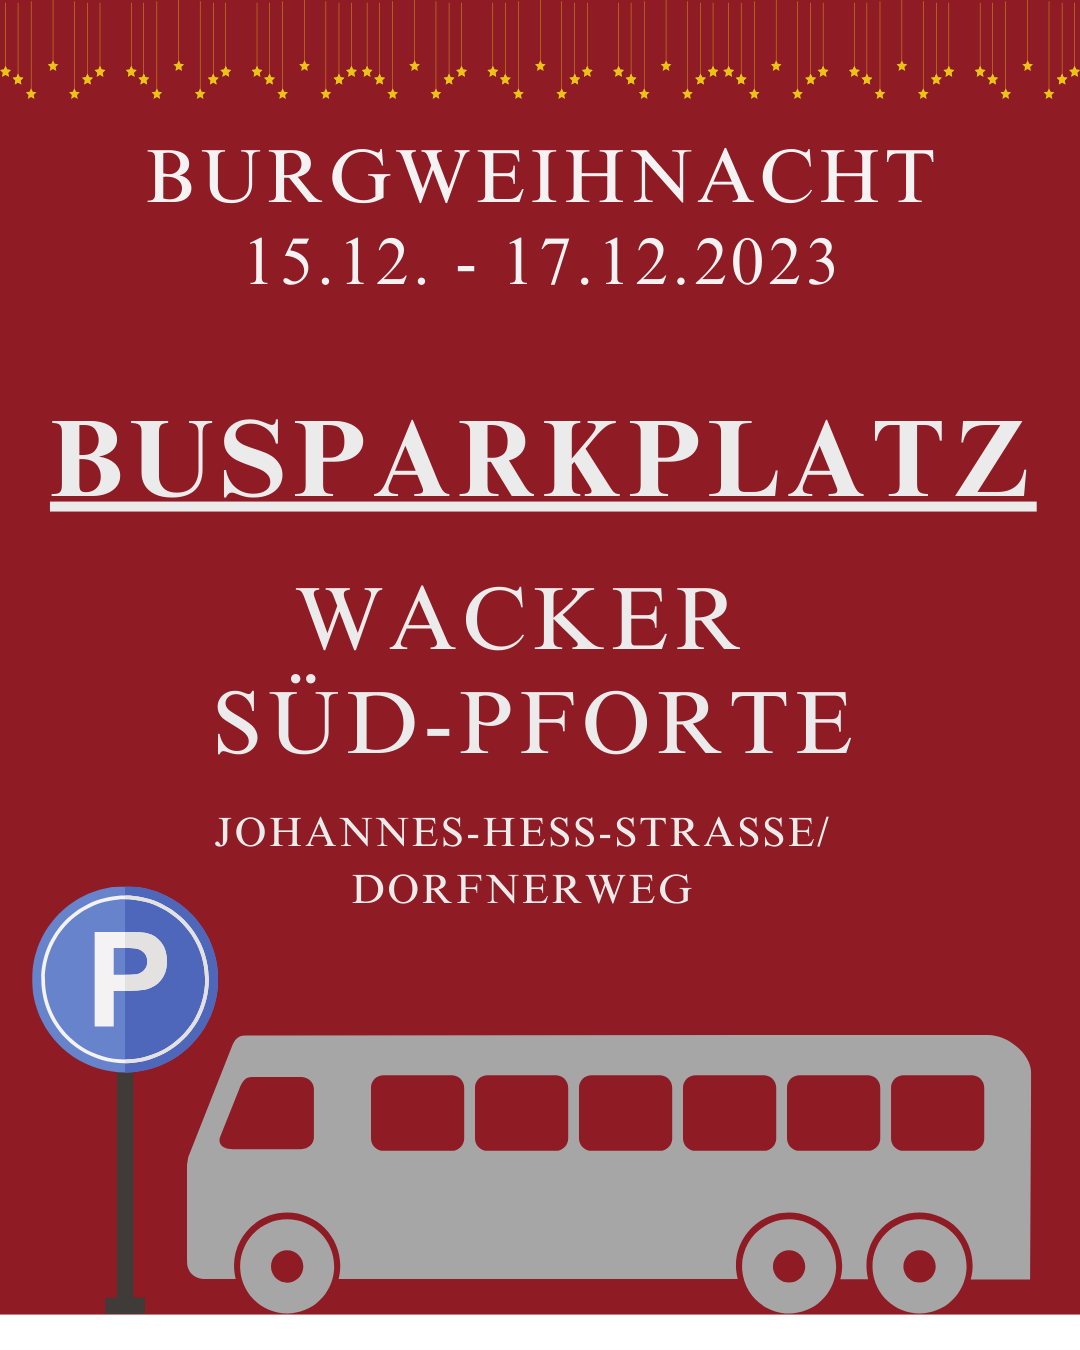 Busse parken während der Burgweihnacht 2023 bitte am Parkplatz bei der Wacker Süd-Pforte